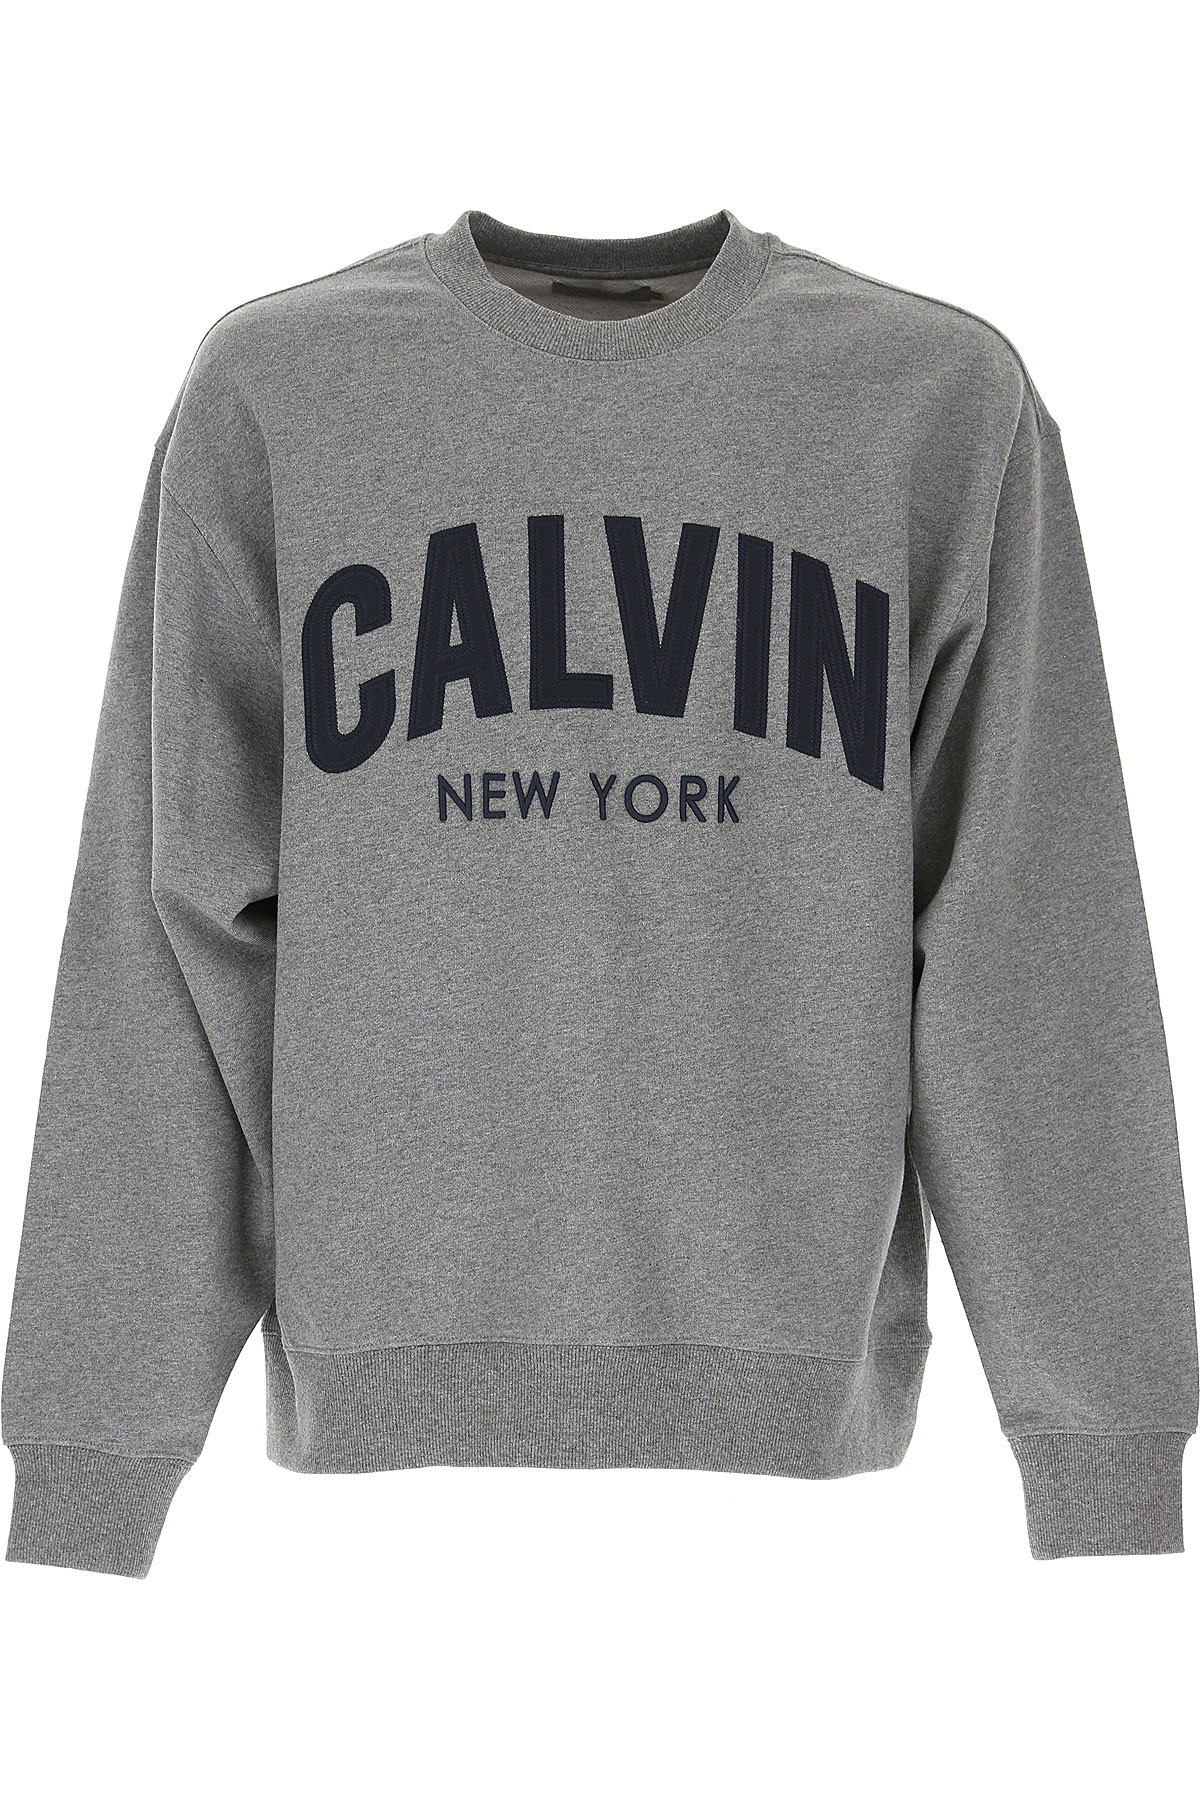 Calvin Klein Sweatshirt für Herren, Kapuzenpulli, Hoodie, Sweats Günstig im Outlet Sale, Grau Melange, Baumwolle, 2017, L M S